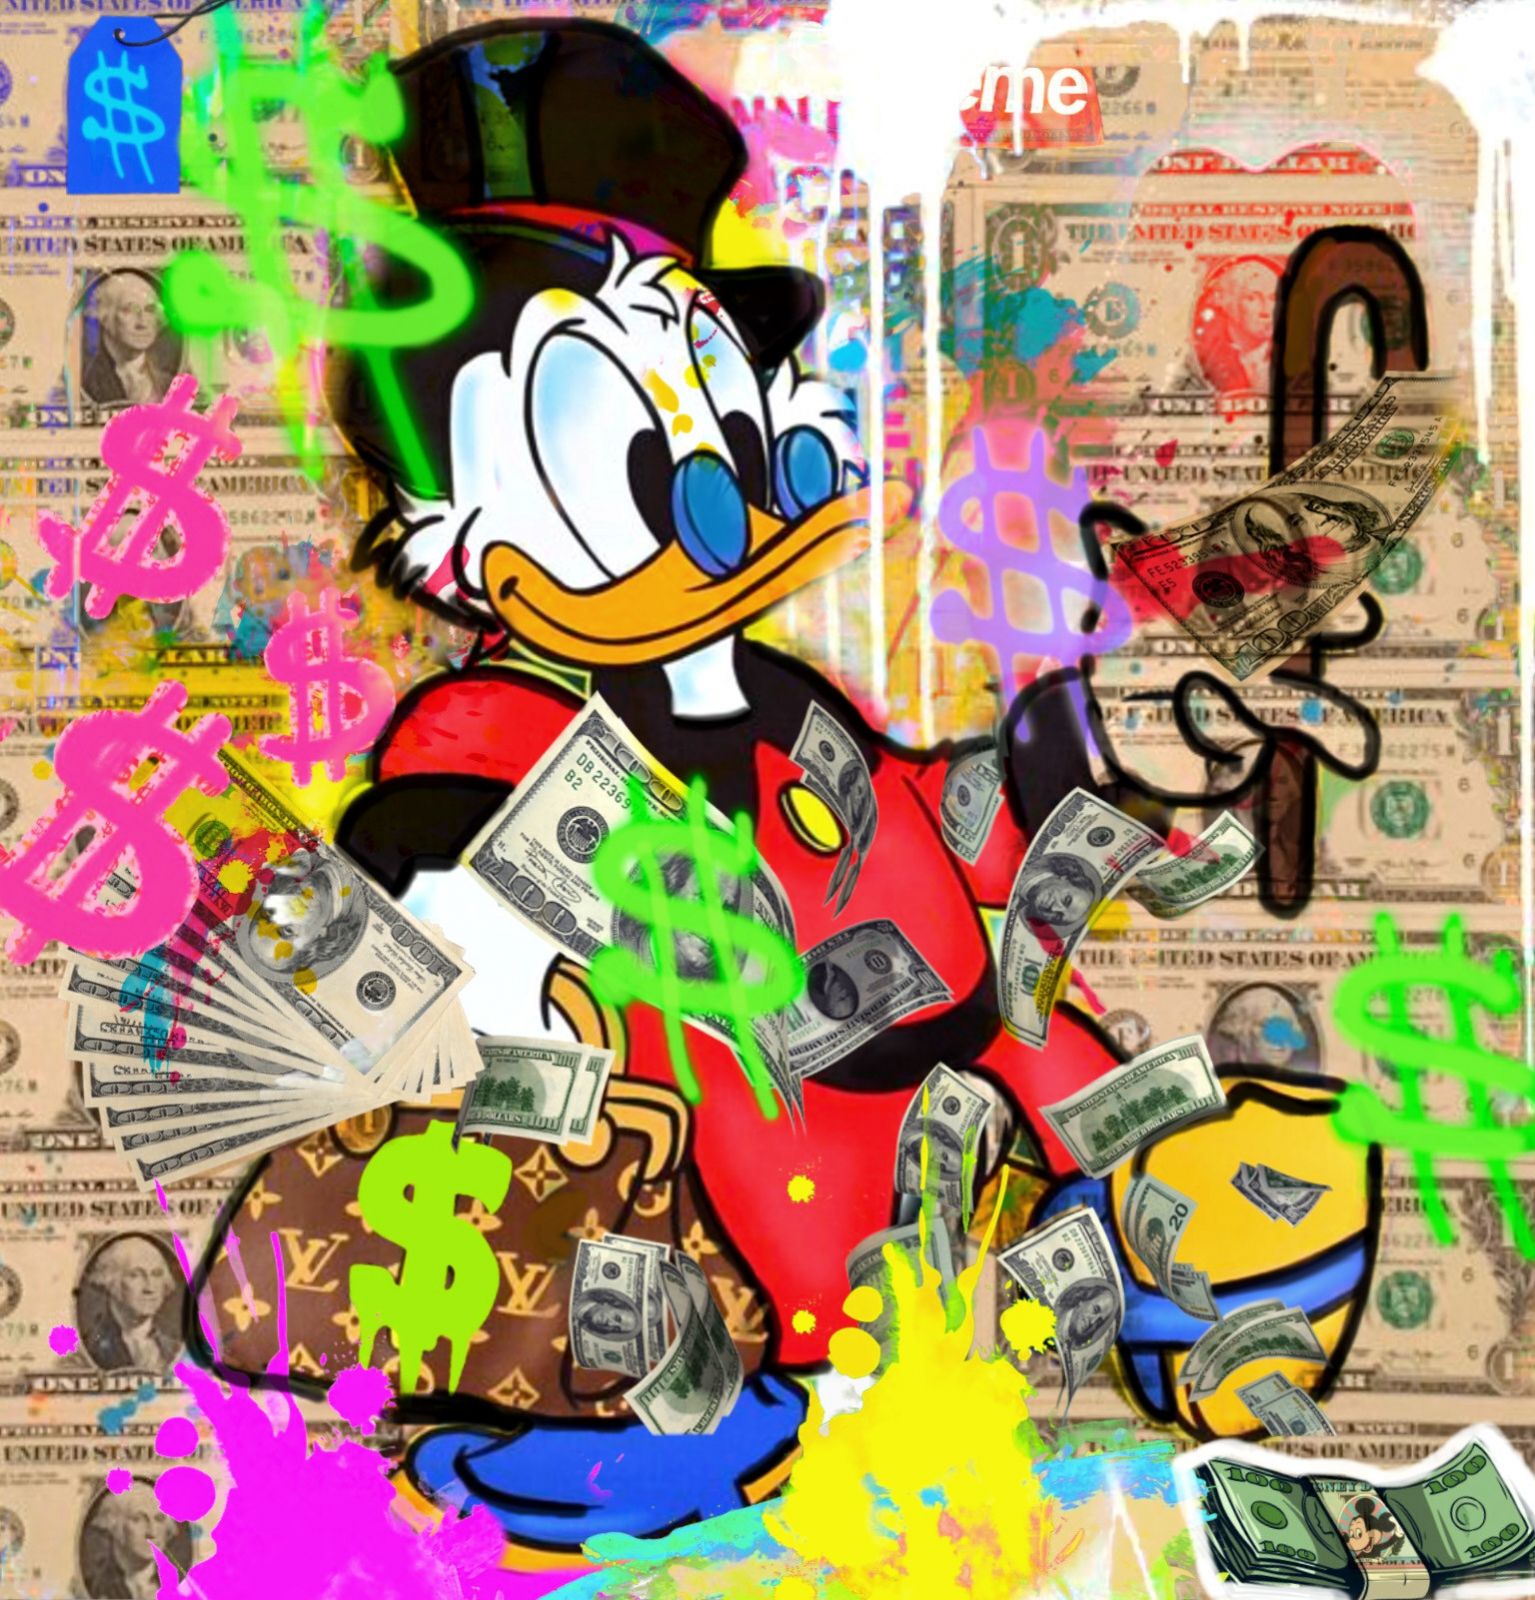 Felix-von-Altersheim-Scrooge-McDuck-Favorite-banknote-Neo-Popart-Printing-on-Plexiglas-